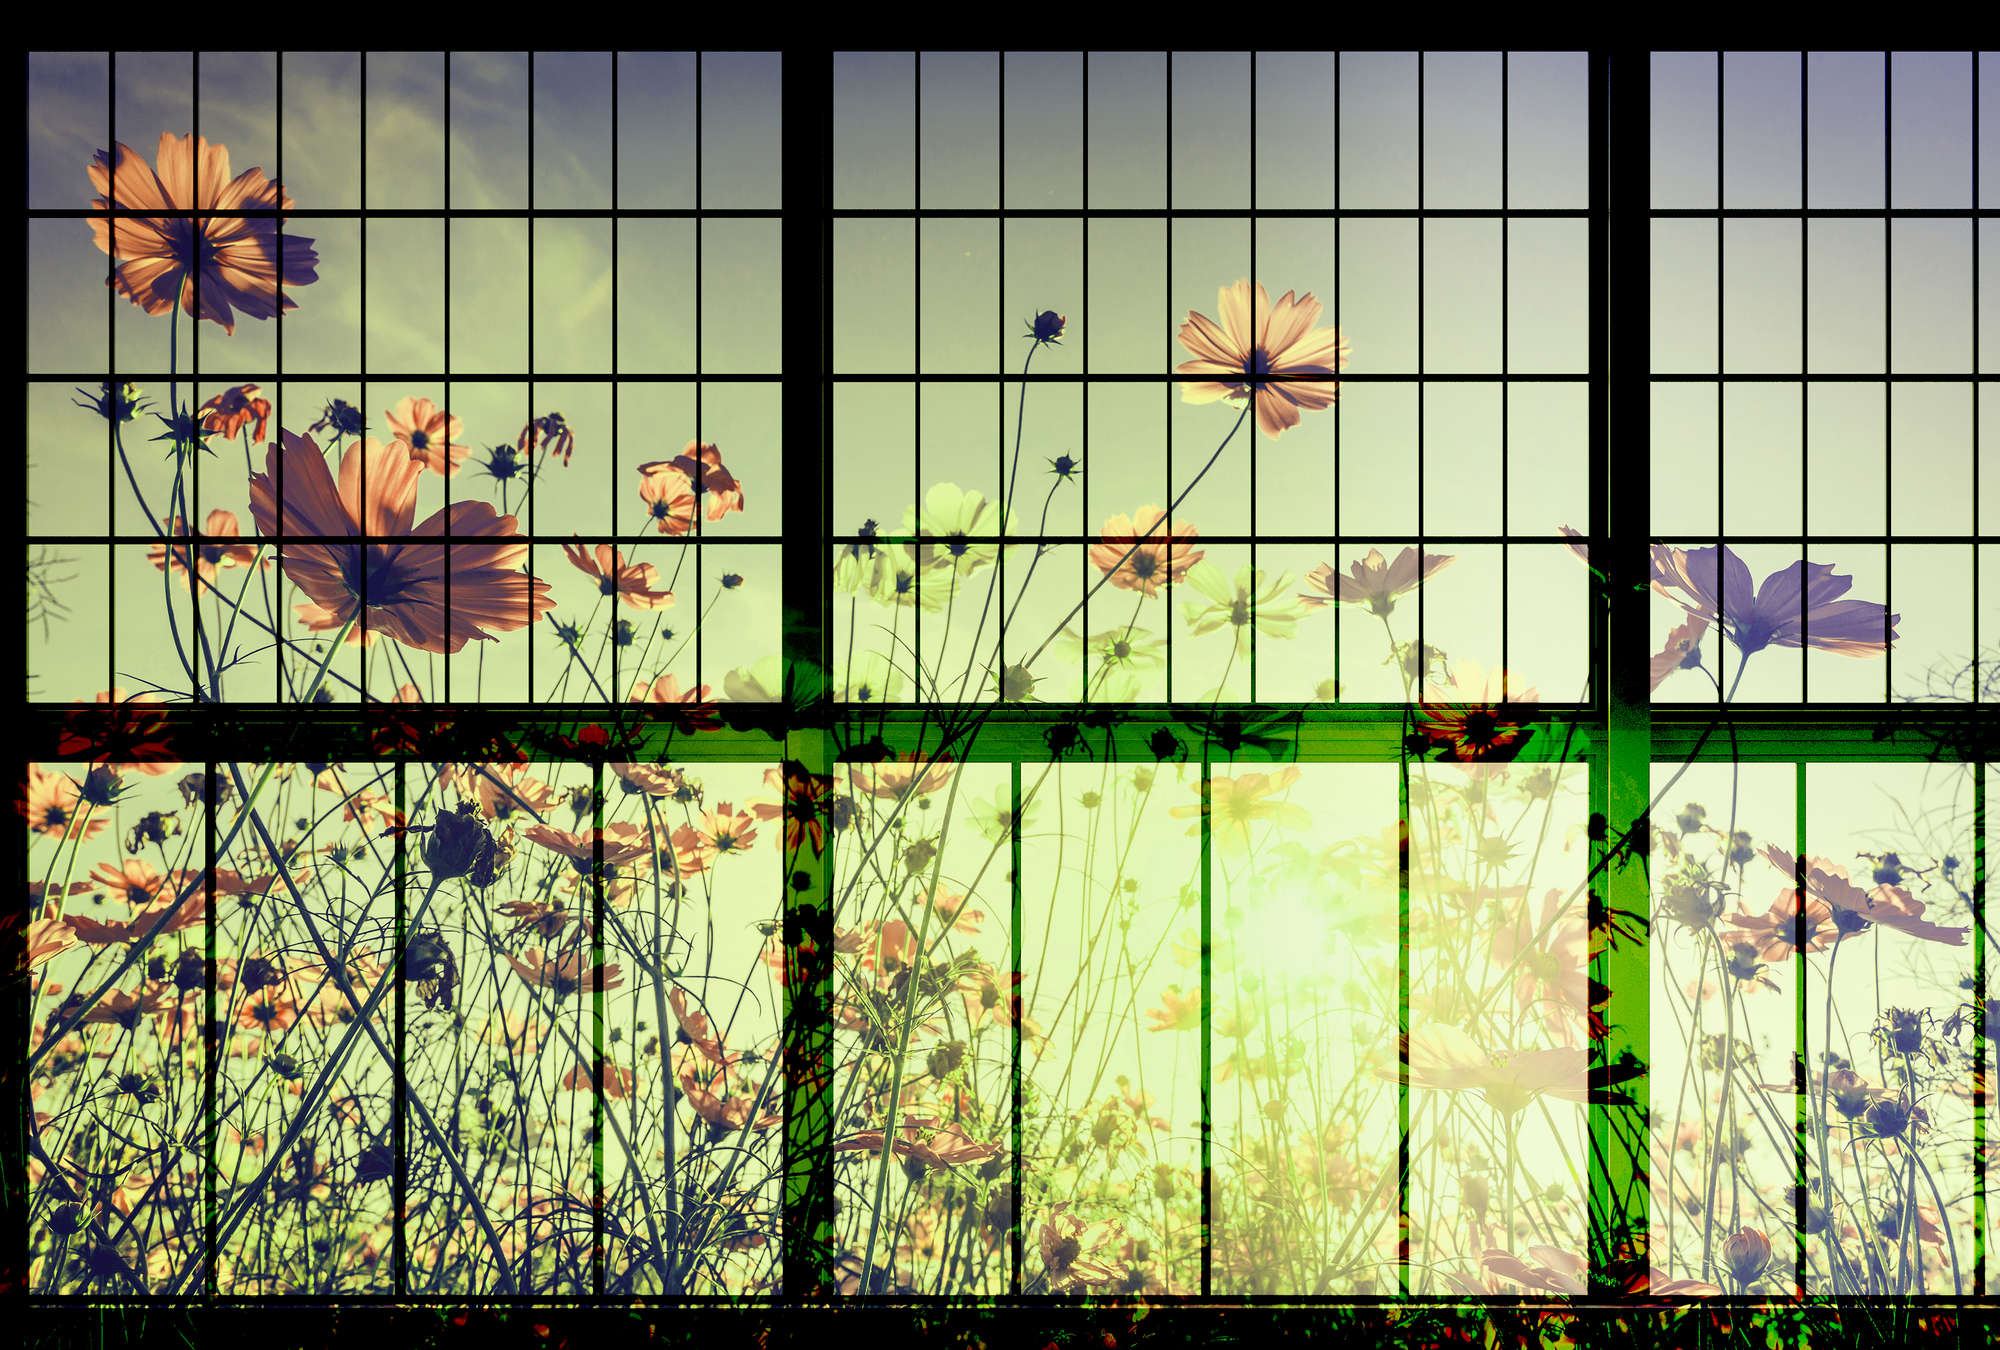             Meadow 2 - Carta da parati per finestre con fiori Meadow - Verde, rosa | Perla in tessuto liscio
        